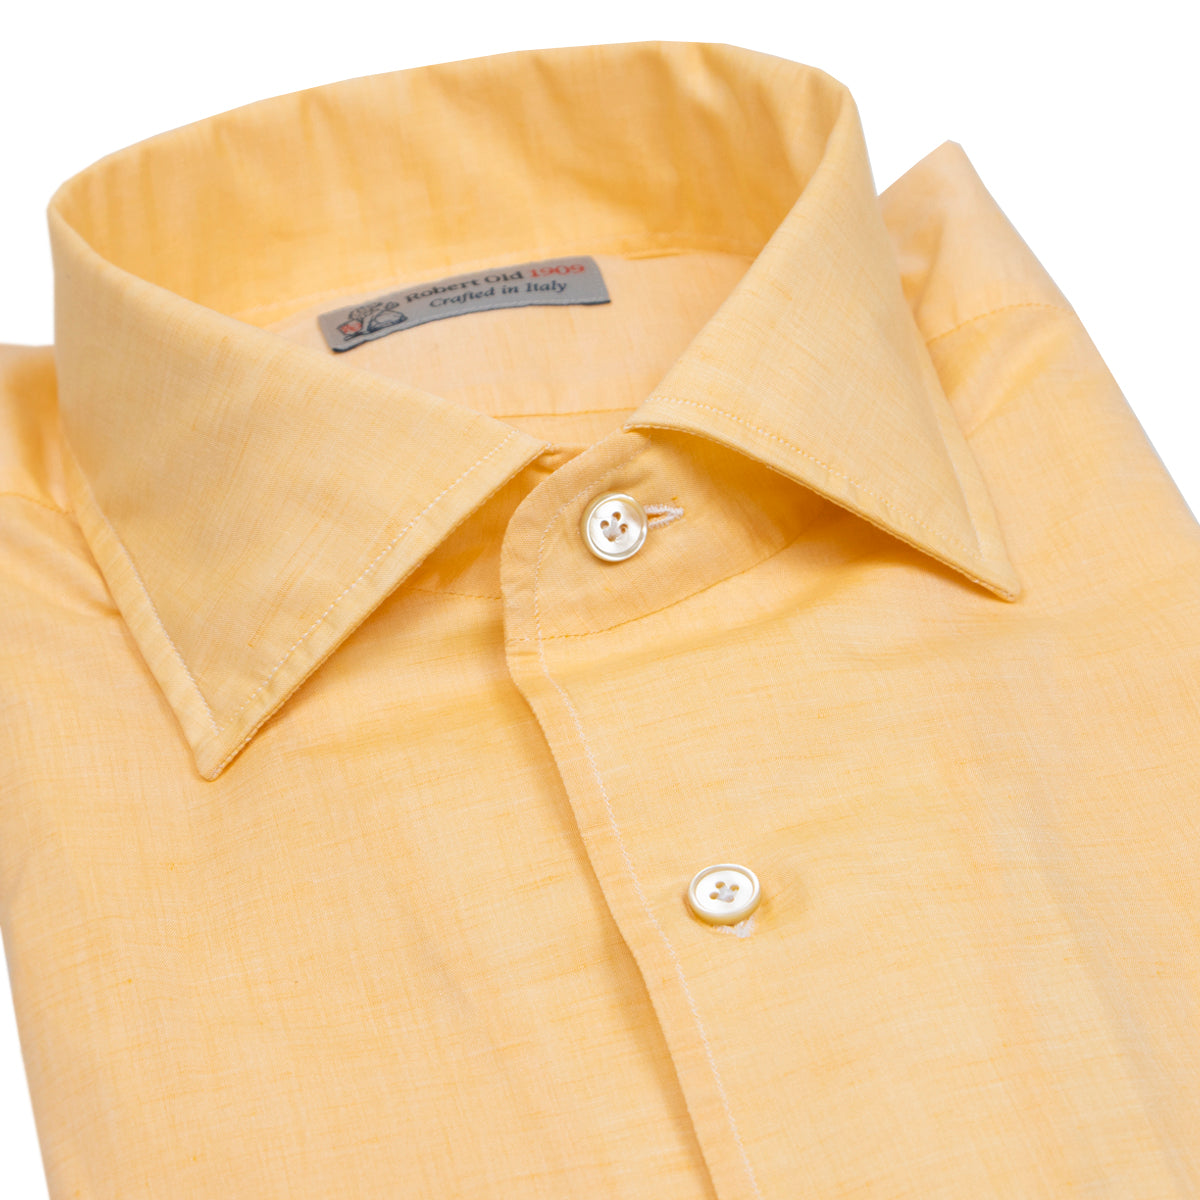 Orange Cotton & Linen Long Sleeve Shirt  Robert Old   